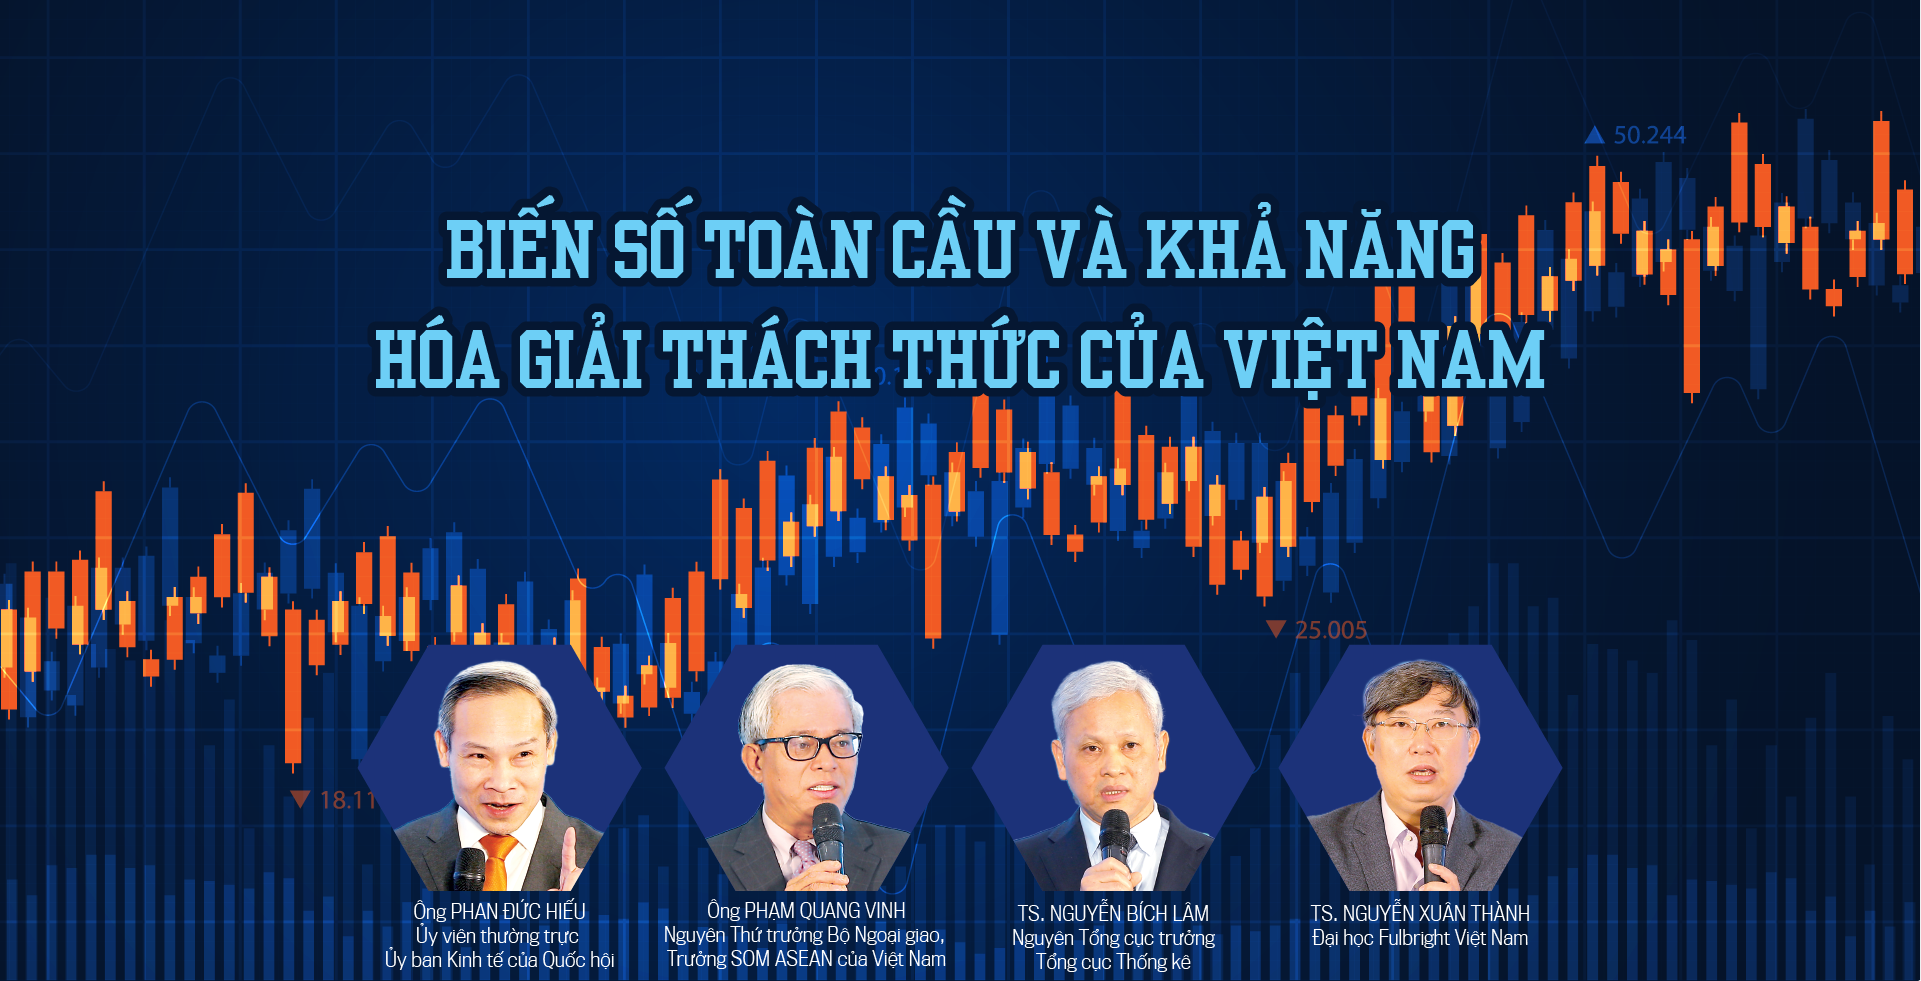 Biến số toàn cầu và khả năng hóa giải thách thức của Việt Nam - Ảnh 1